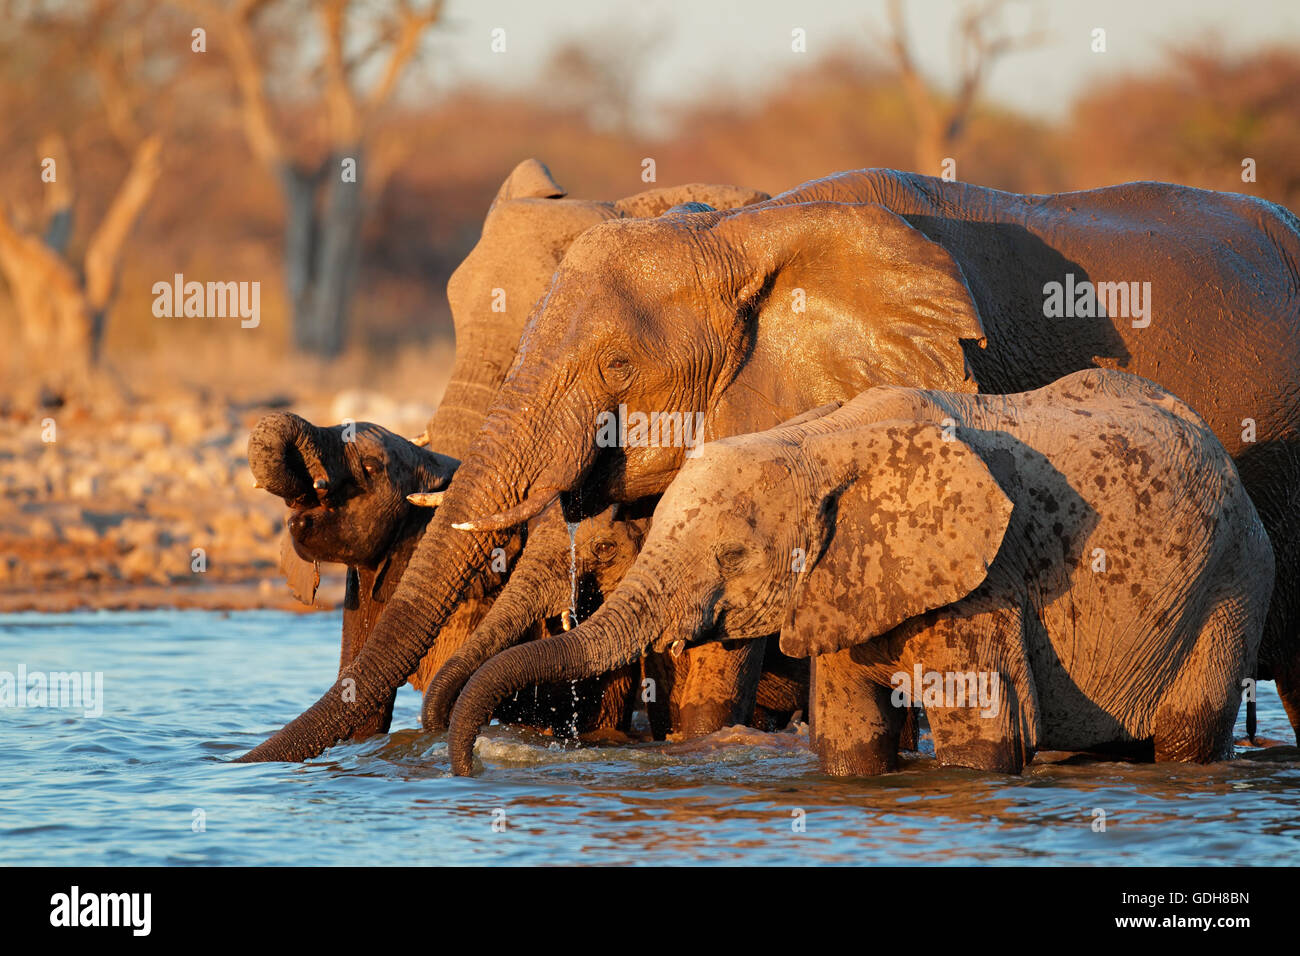 African elephants (Loxodonta africana) drinking water, Etosha National Park, Namibia Stock Photo